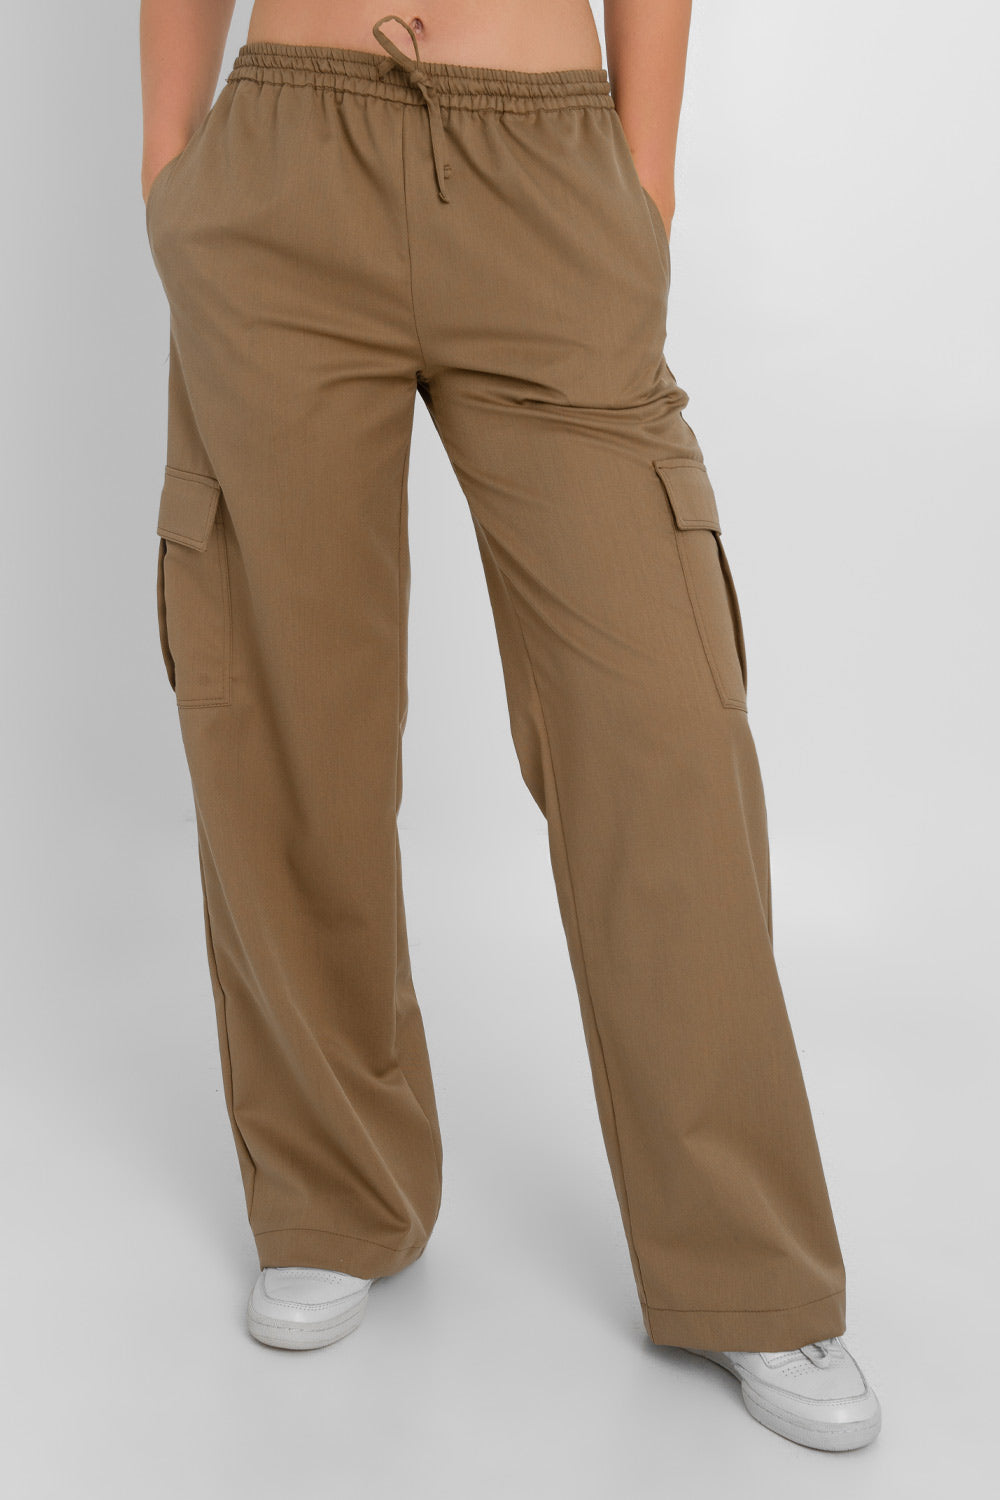 Pantalón cargo de fit recto, cintura media con pretina elástica y jareta frontal ajustable, bolsillos delanteros y laterales cargo con cartera.